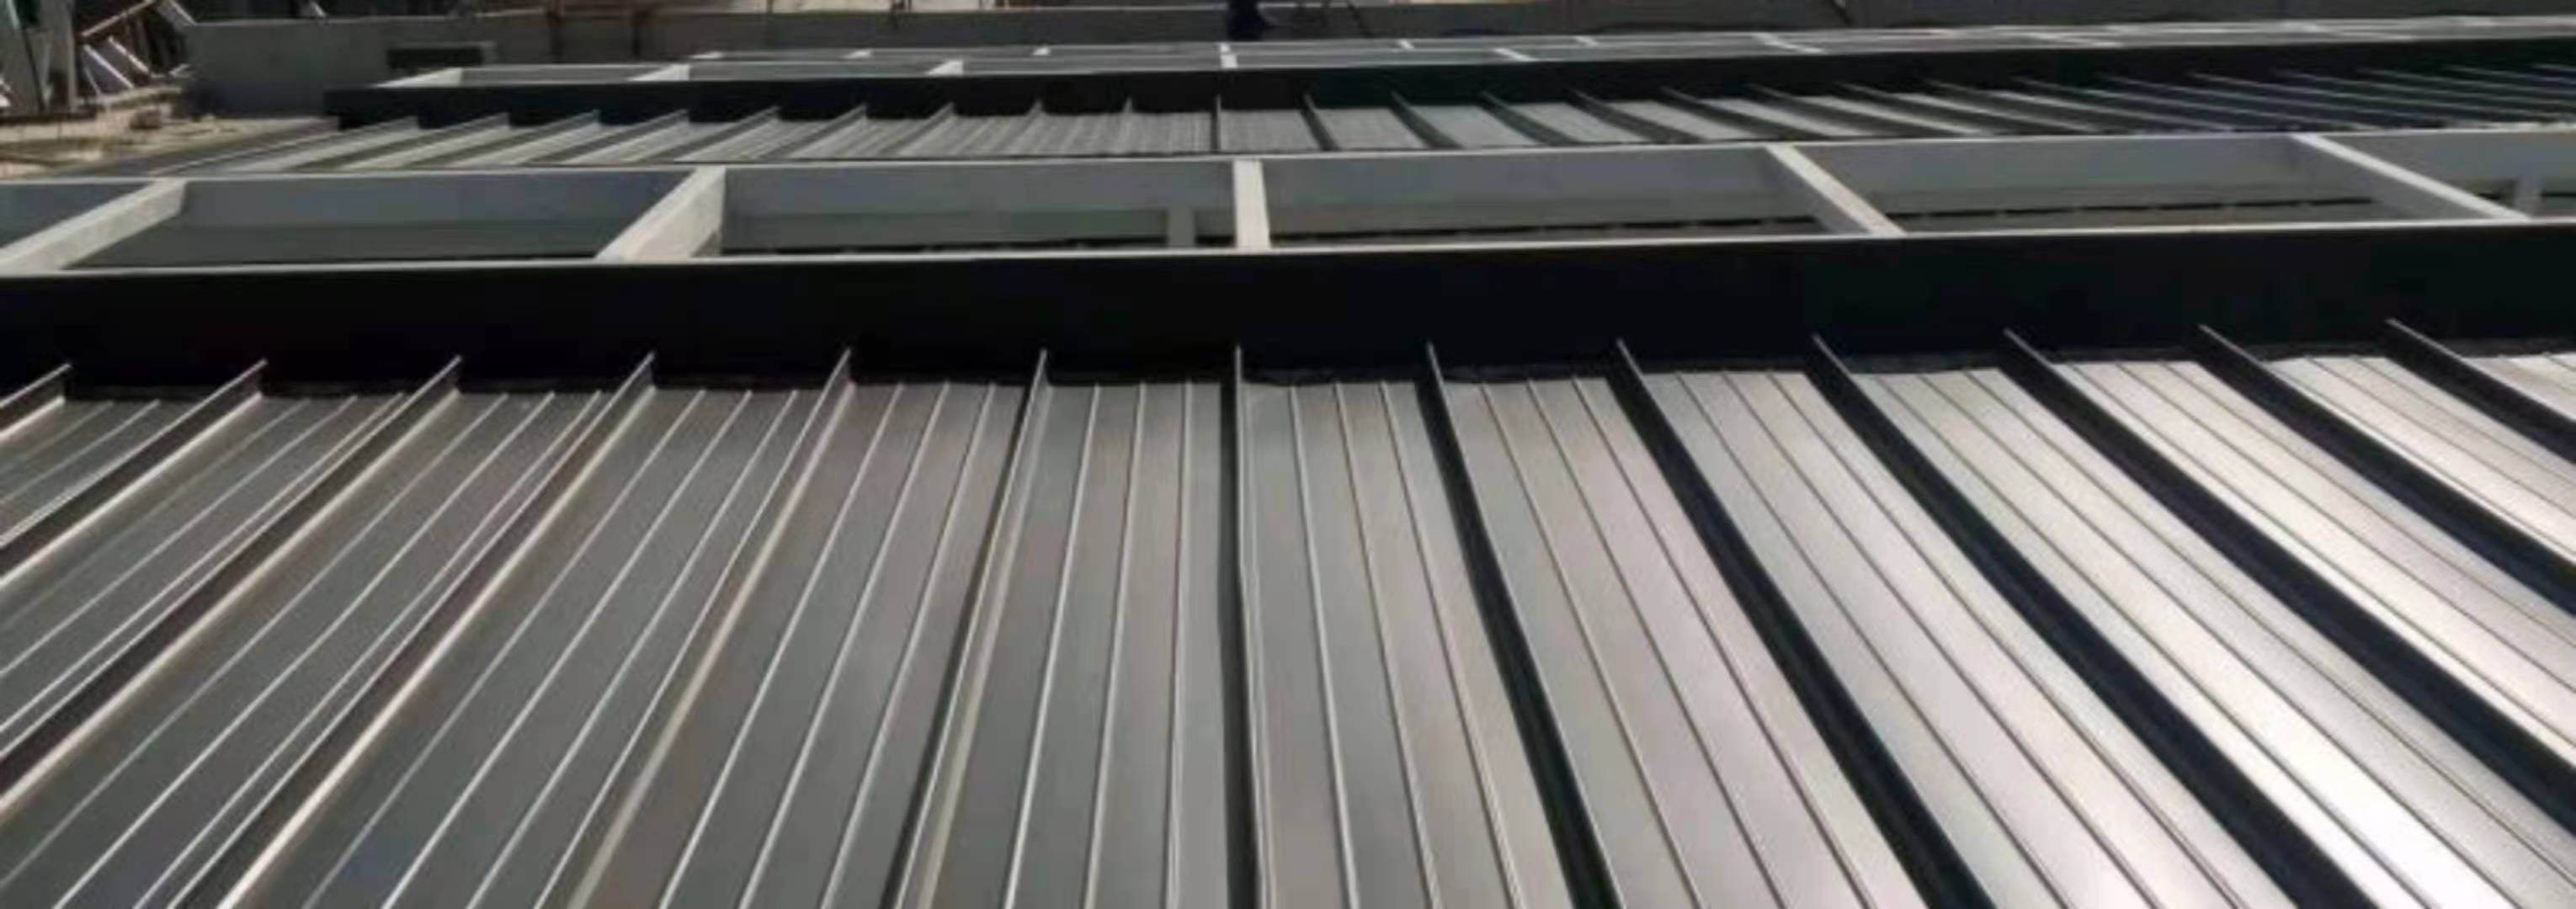 内蒙古赤峰铝镁锰直立锁边屋面板直销